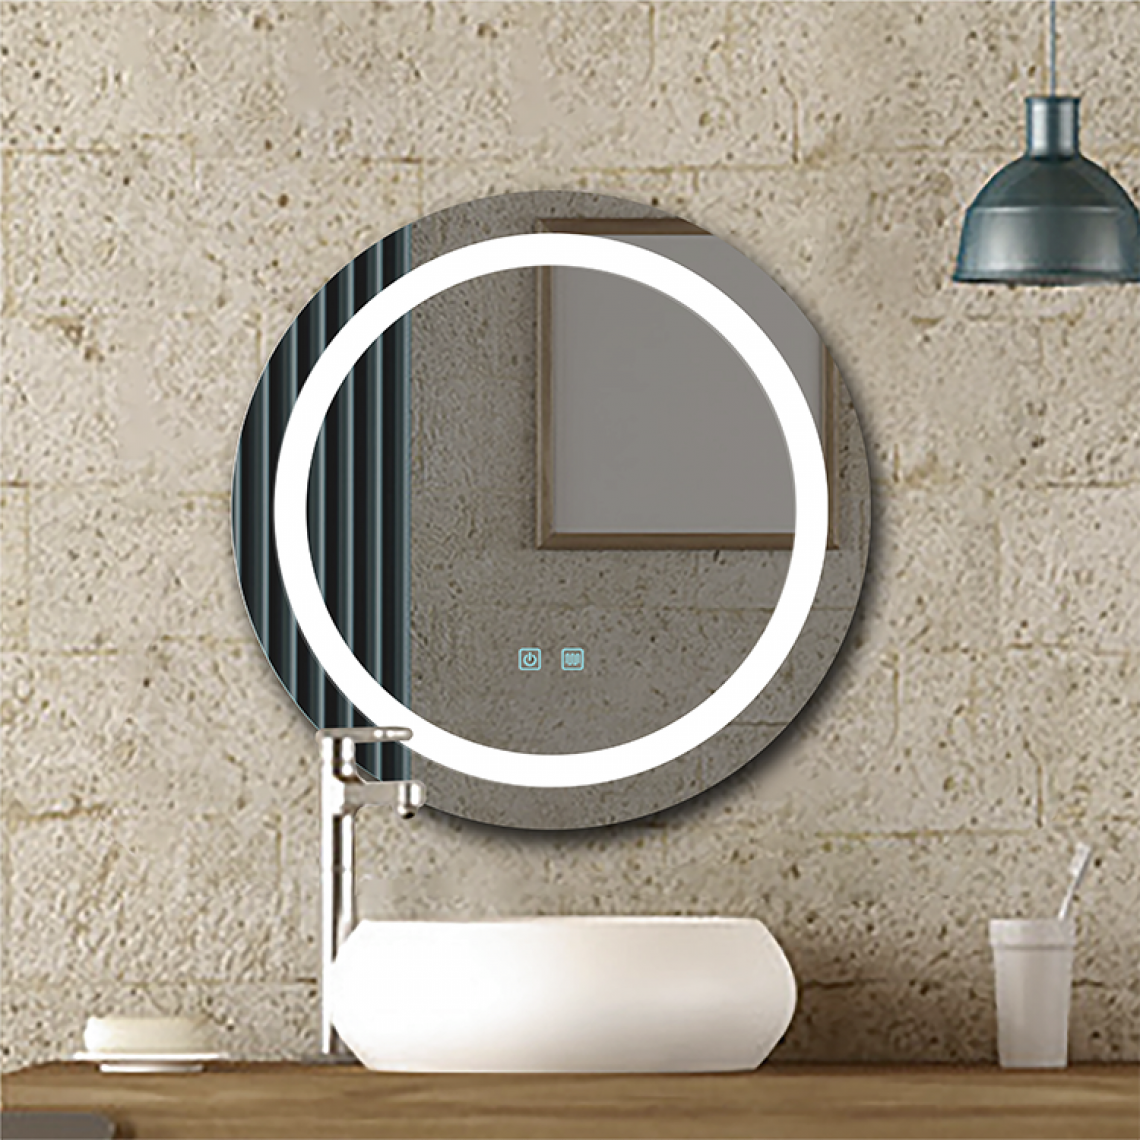 Universal - Miroir LED à écran tactile anti-brouillard pour salle de bains d'hôtel de 60cm |(Argent) - Miroir de salle de bain